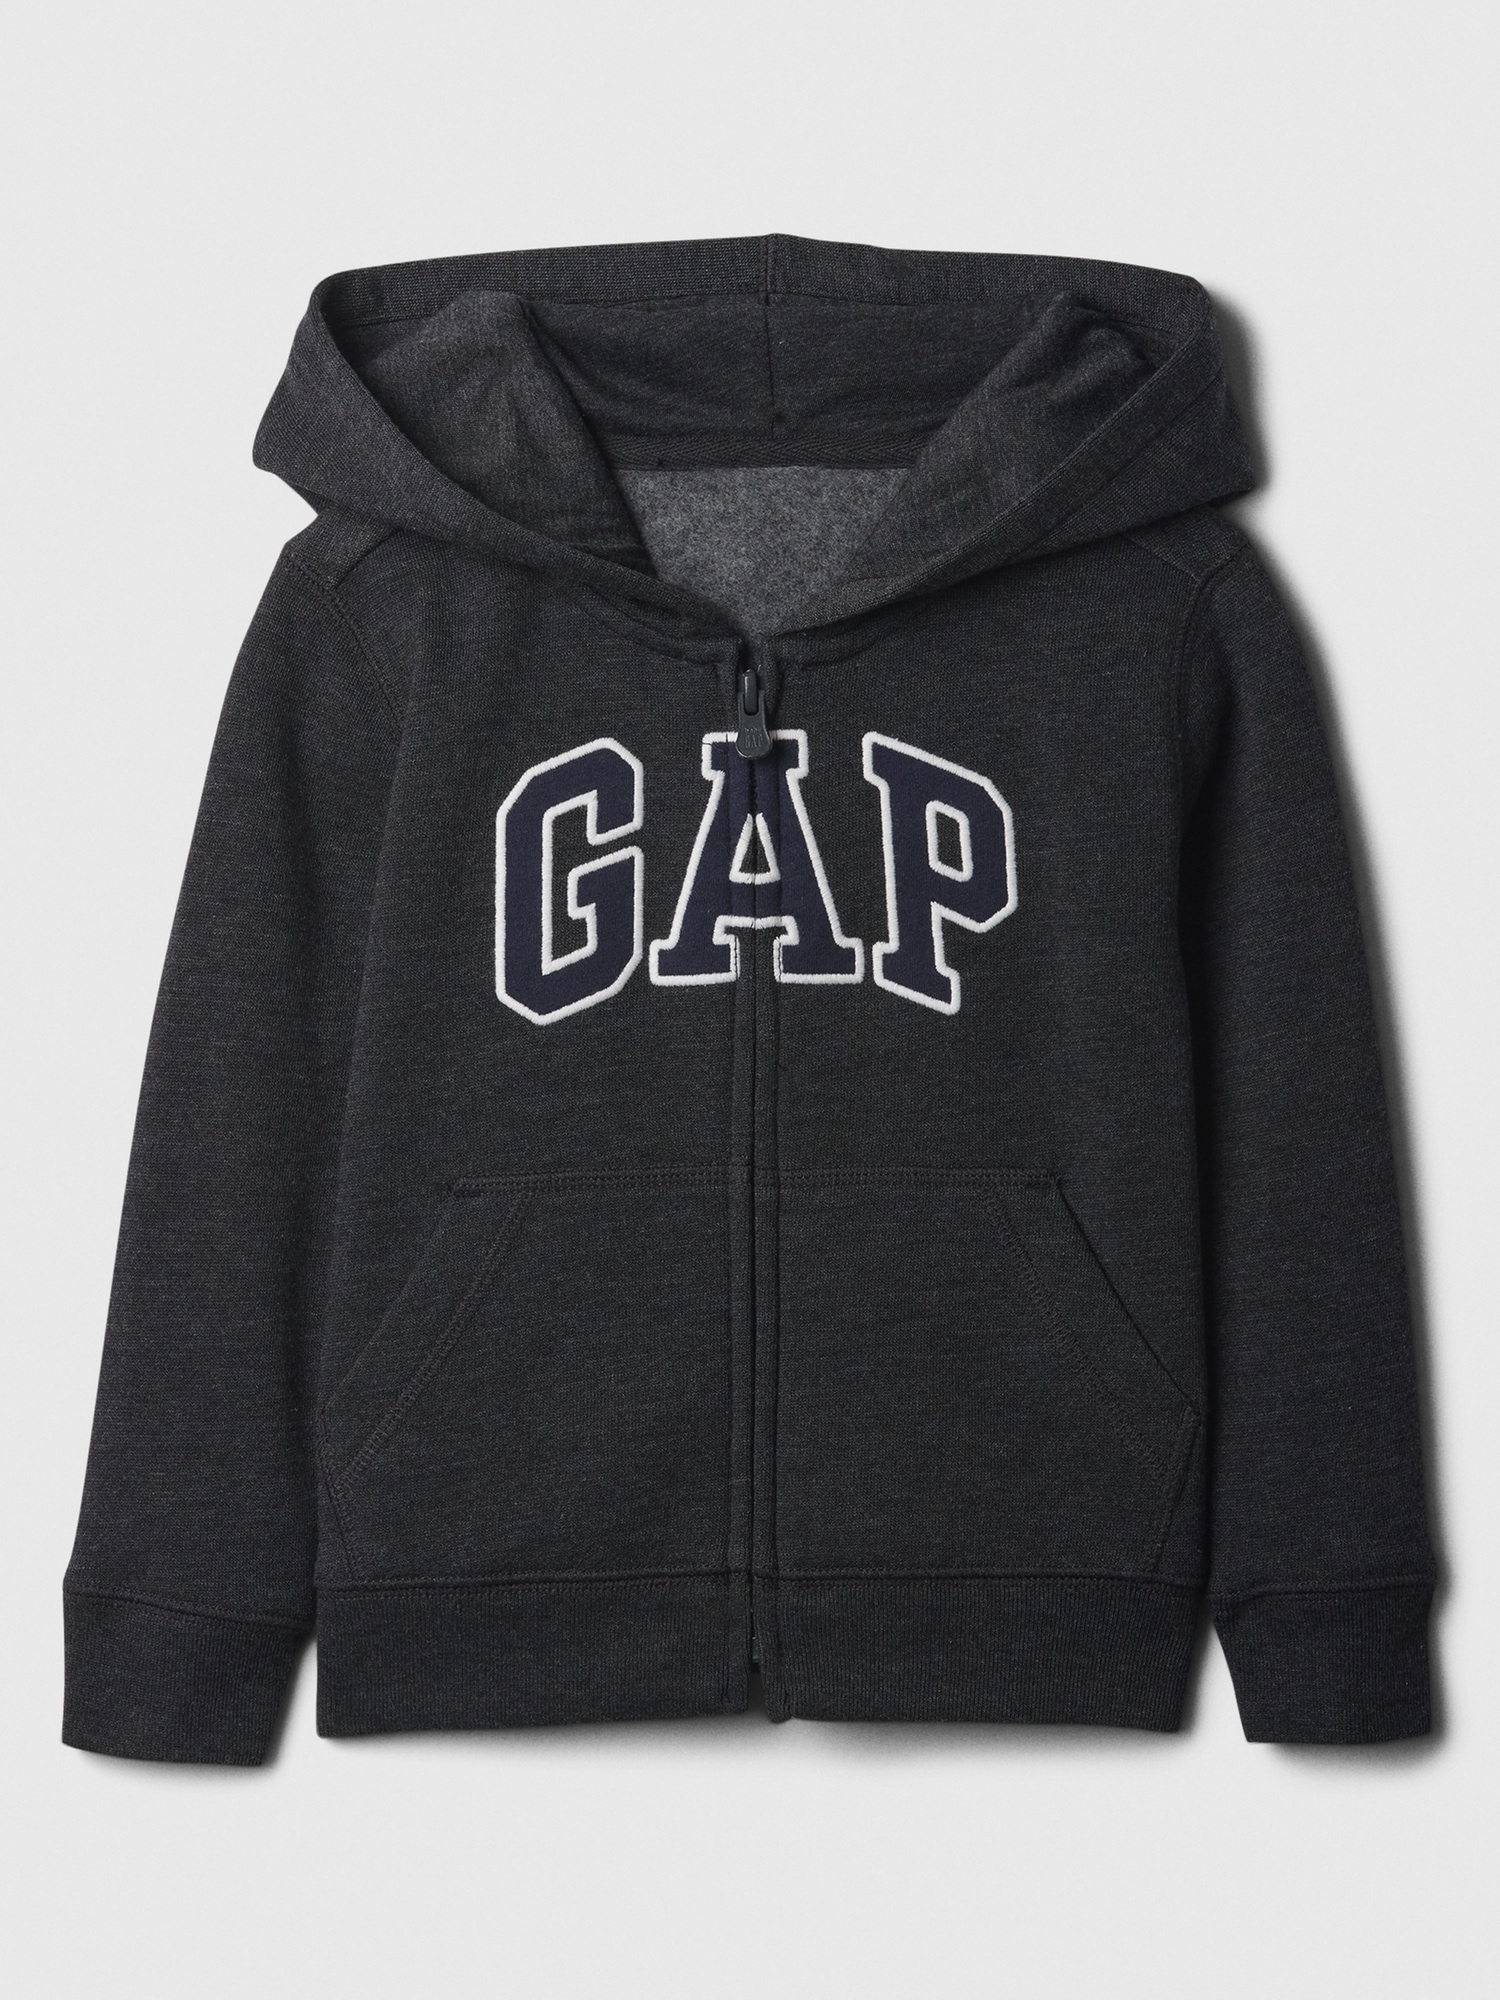 갭 babyGap Logo Zip Hoodie